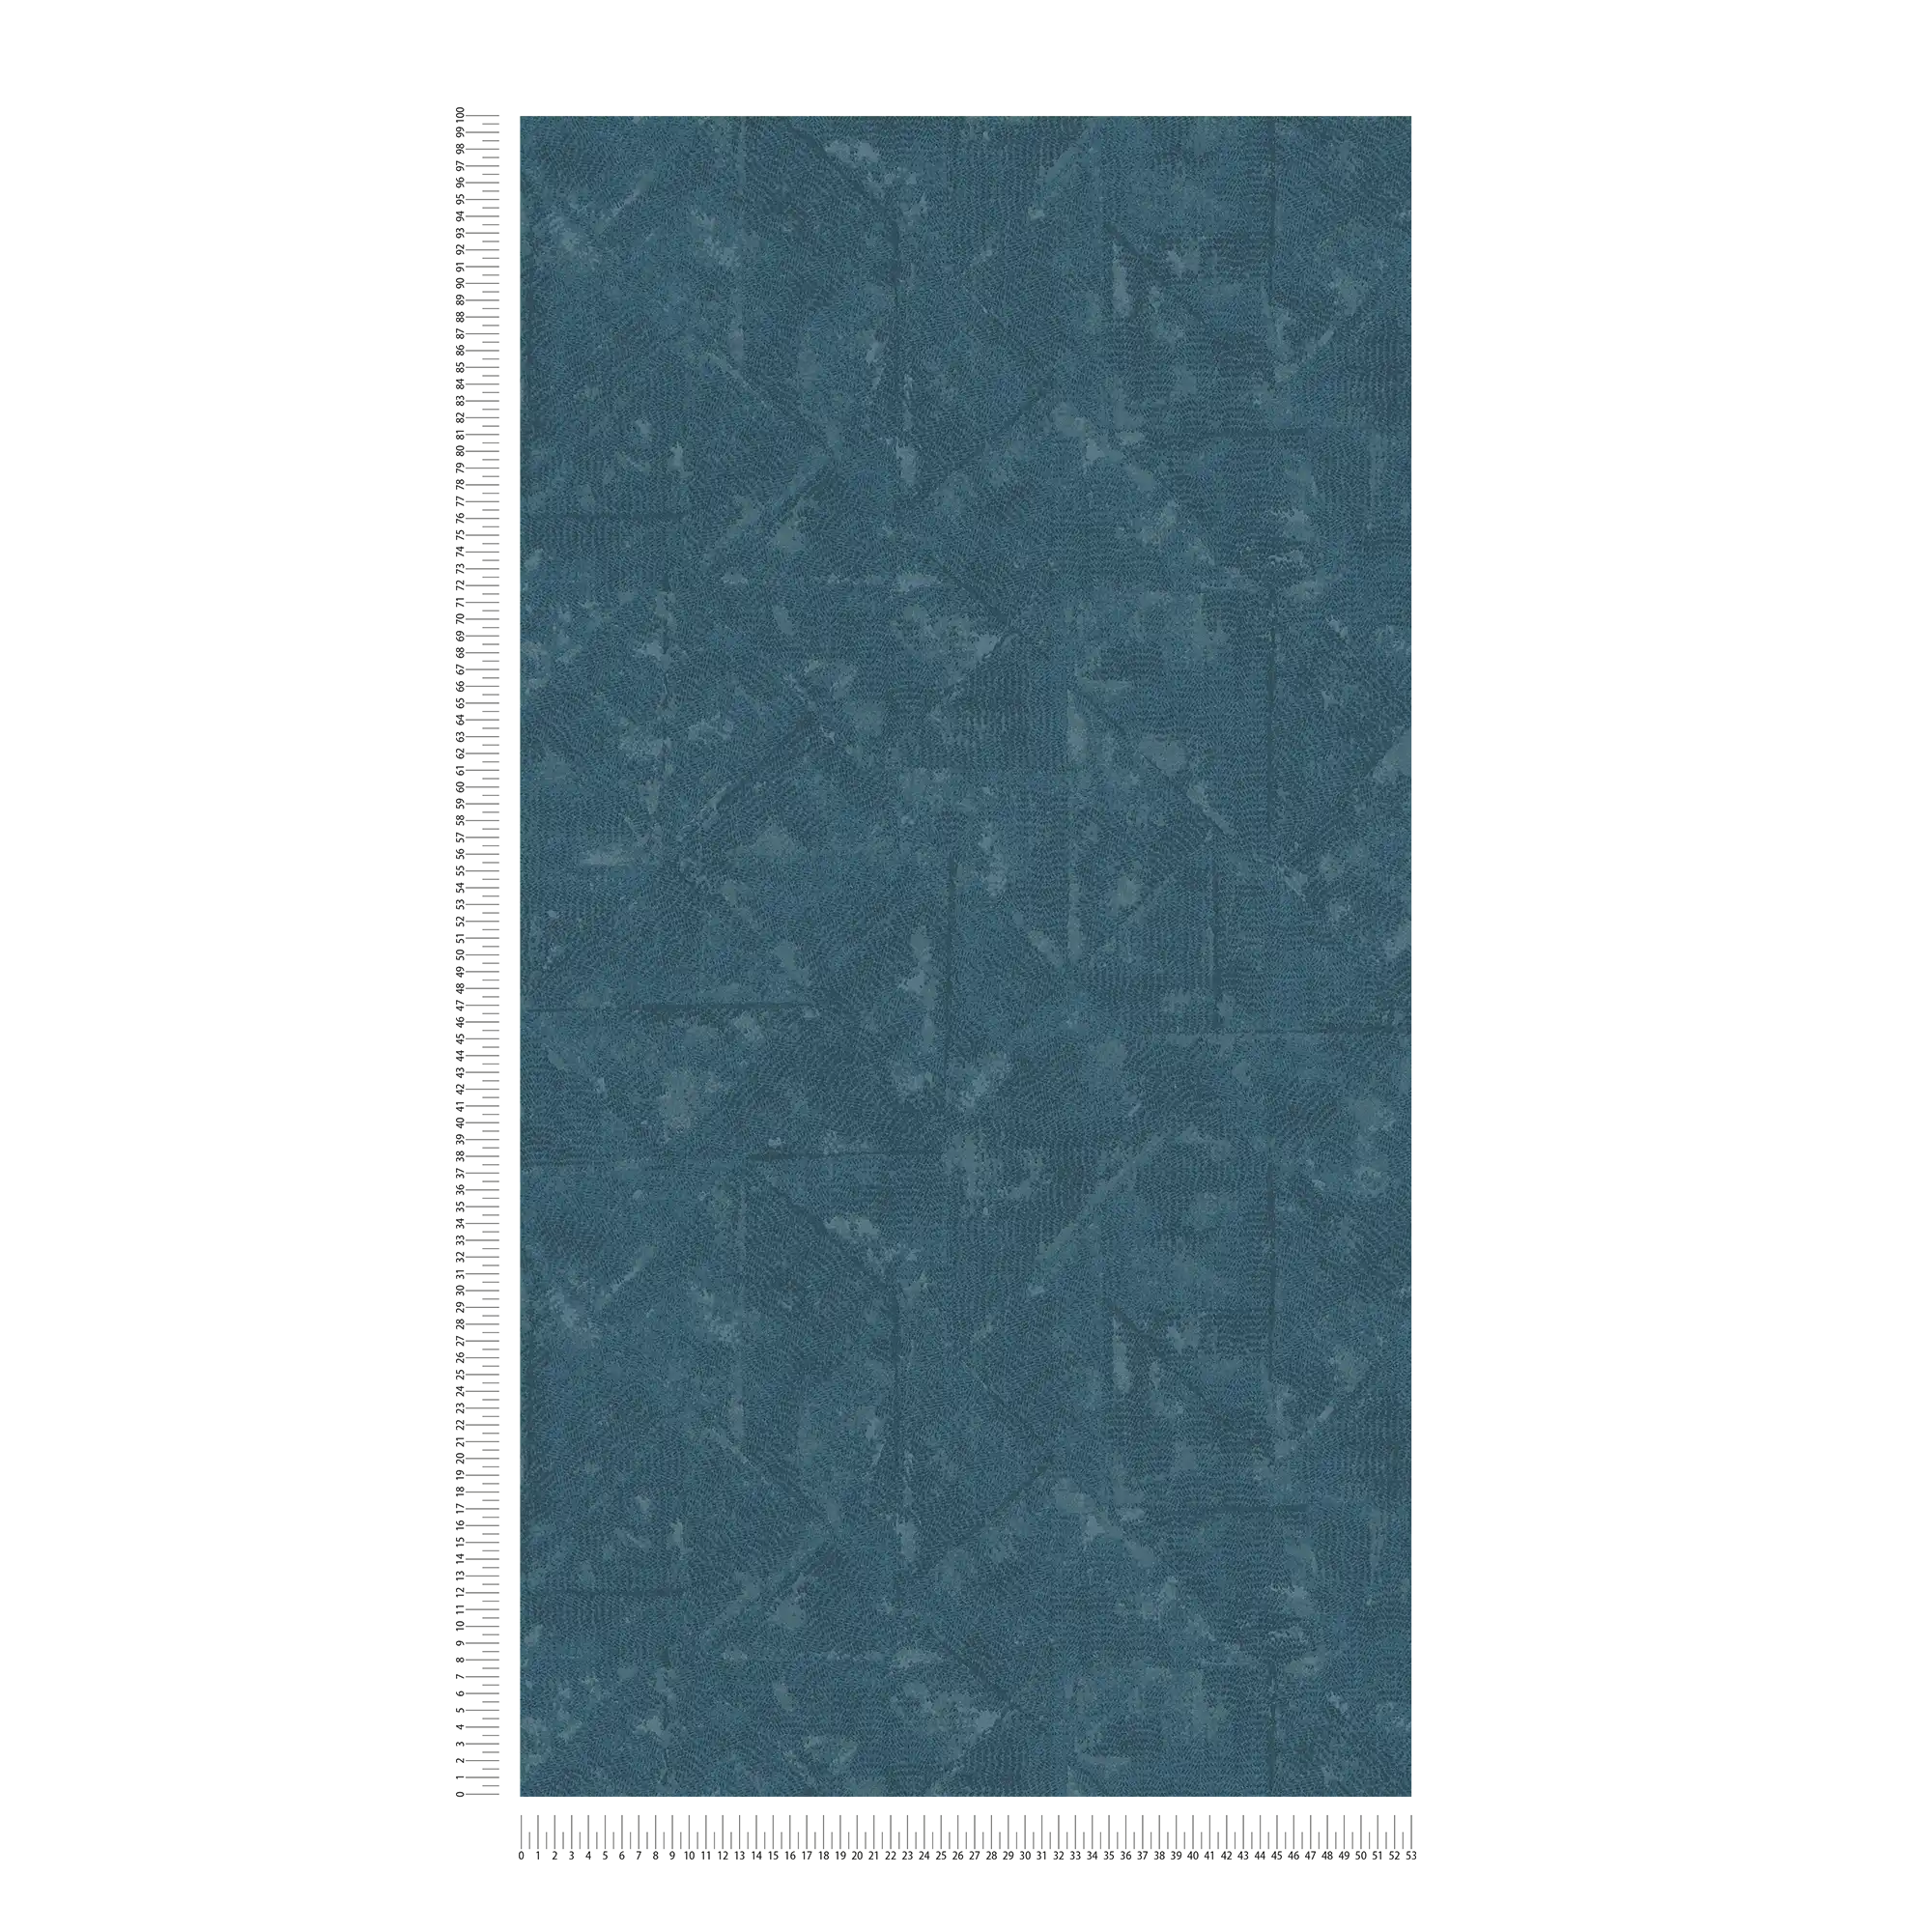             Petrol vliesbehang asymmetrische details - blauw, grijs
        